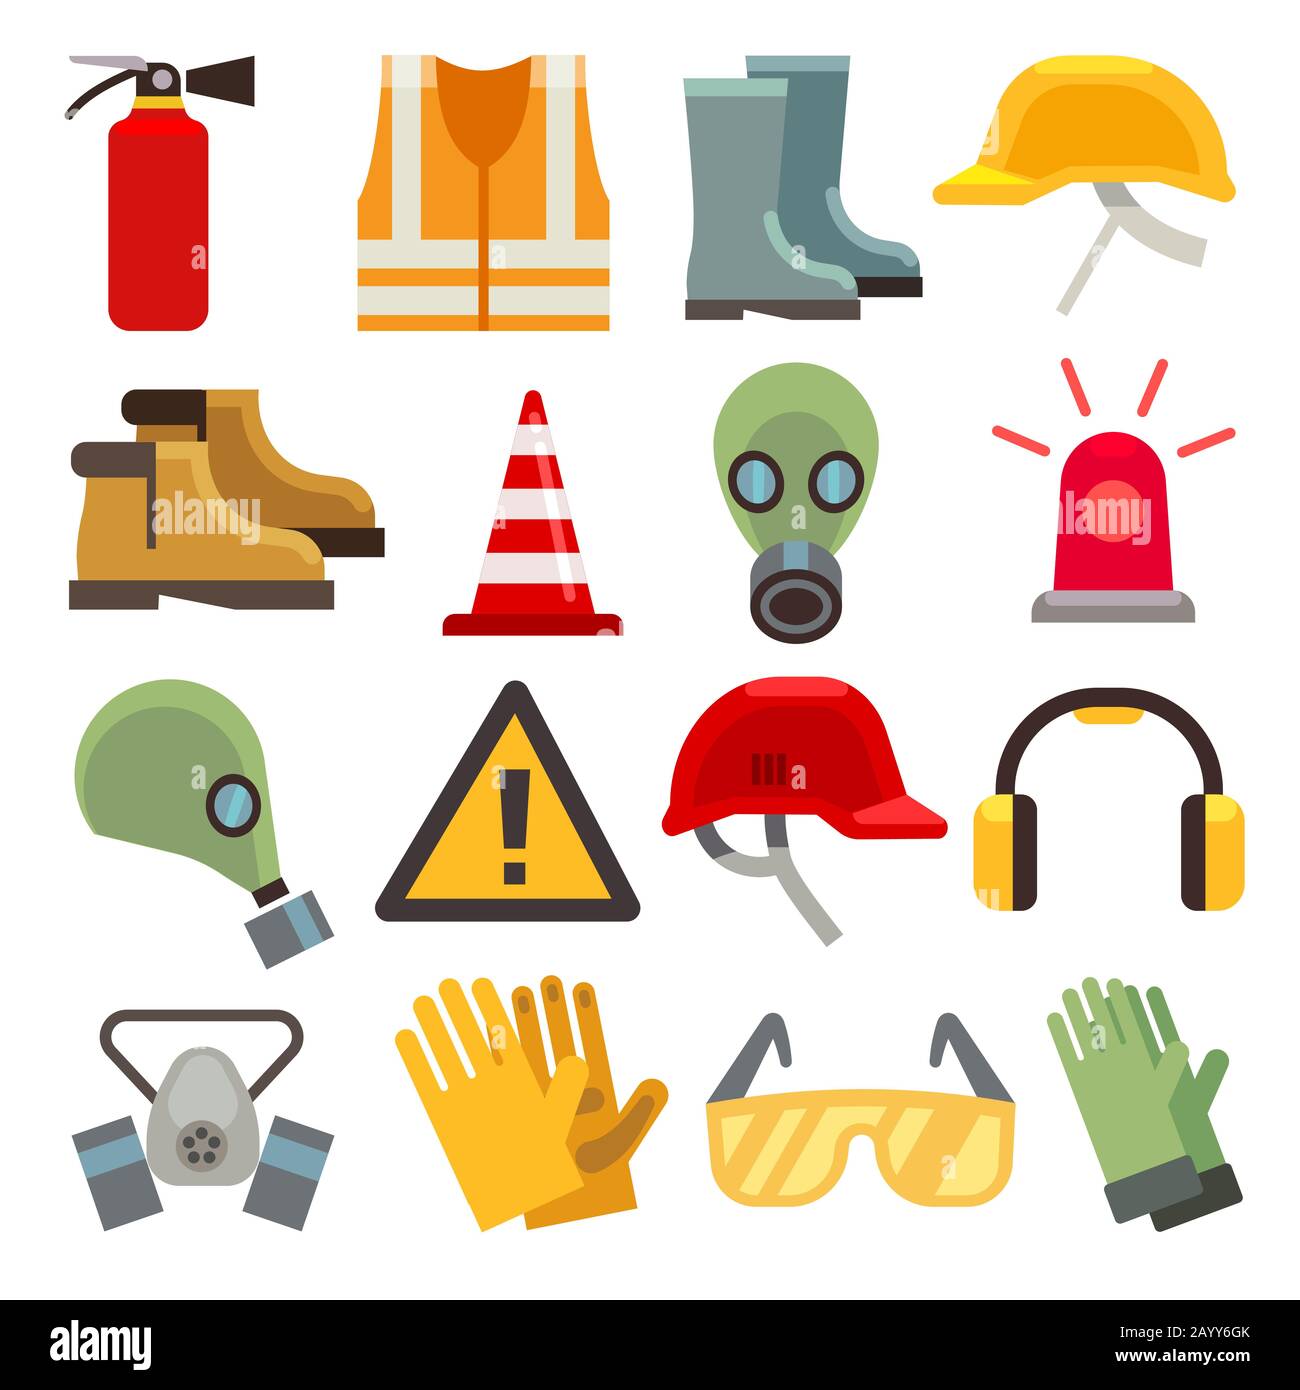 Sicherheitssymbole für flache Vektorgrafiken festgelegt. Arbeitskleidung für Sicherheit, Schuh- und Handschuhschutzkleidung, Helm und Feuerlöscher Stock Vektor